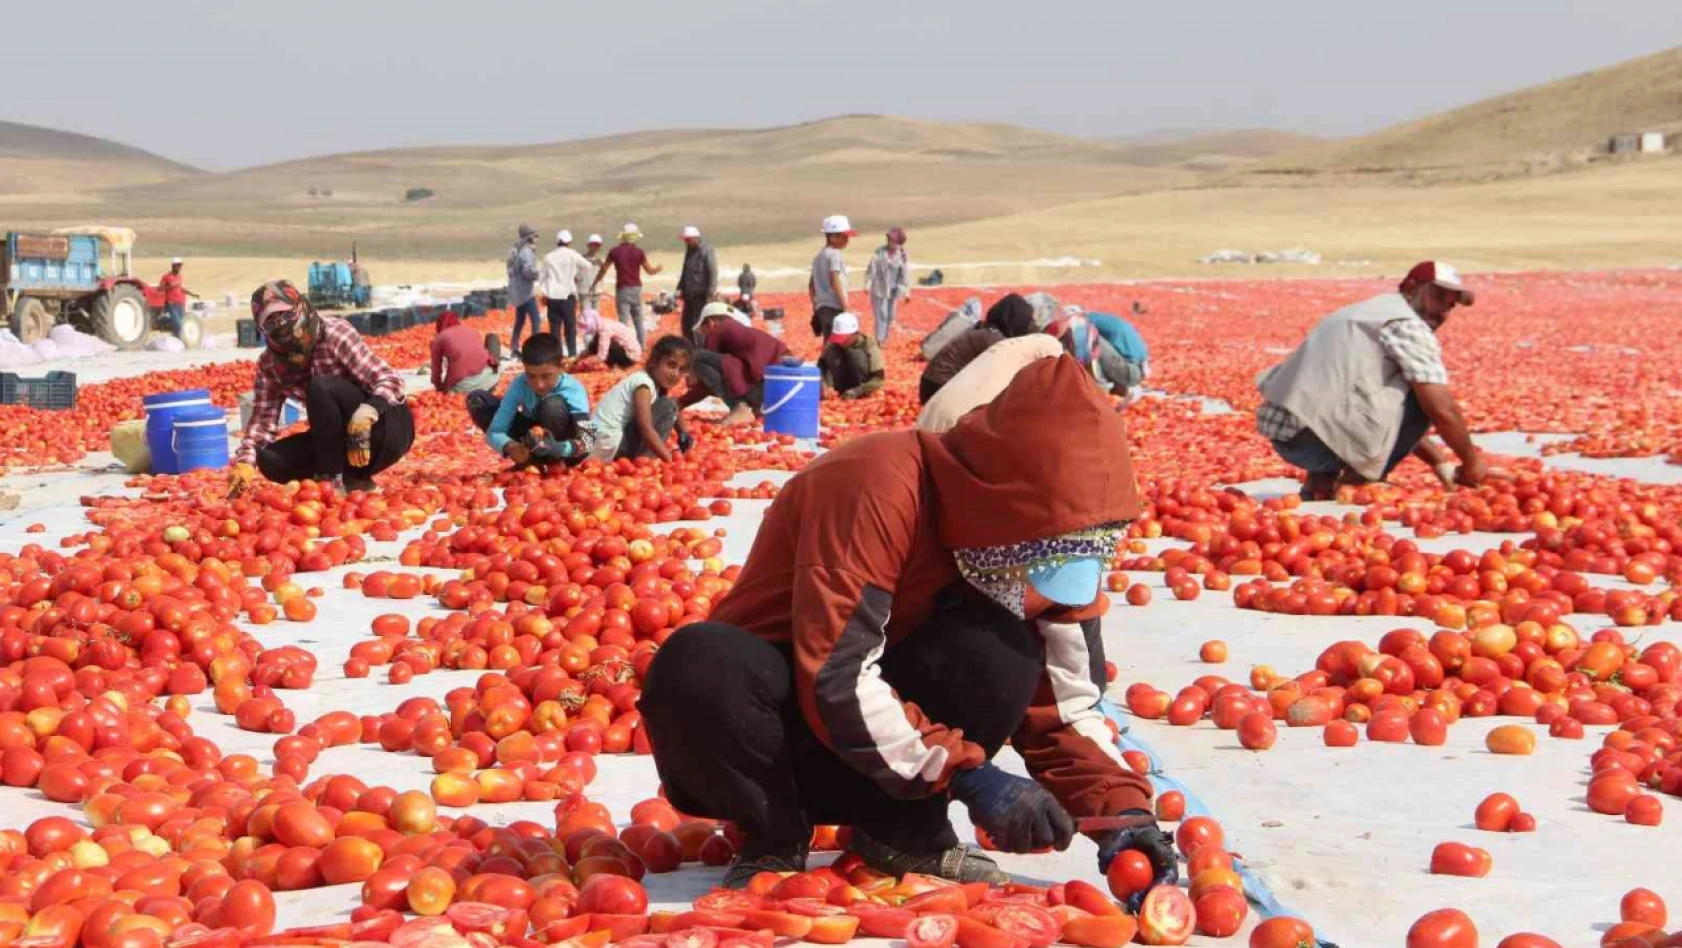 Elazığ'da 20 bin dekar alanda domates hasadı sürüyor